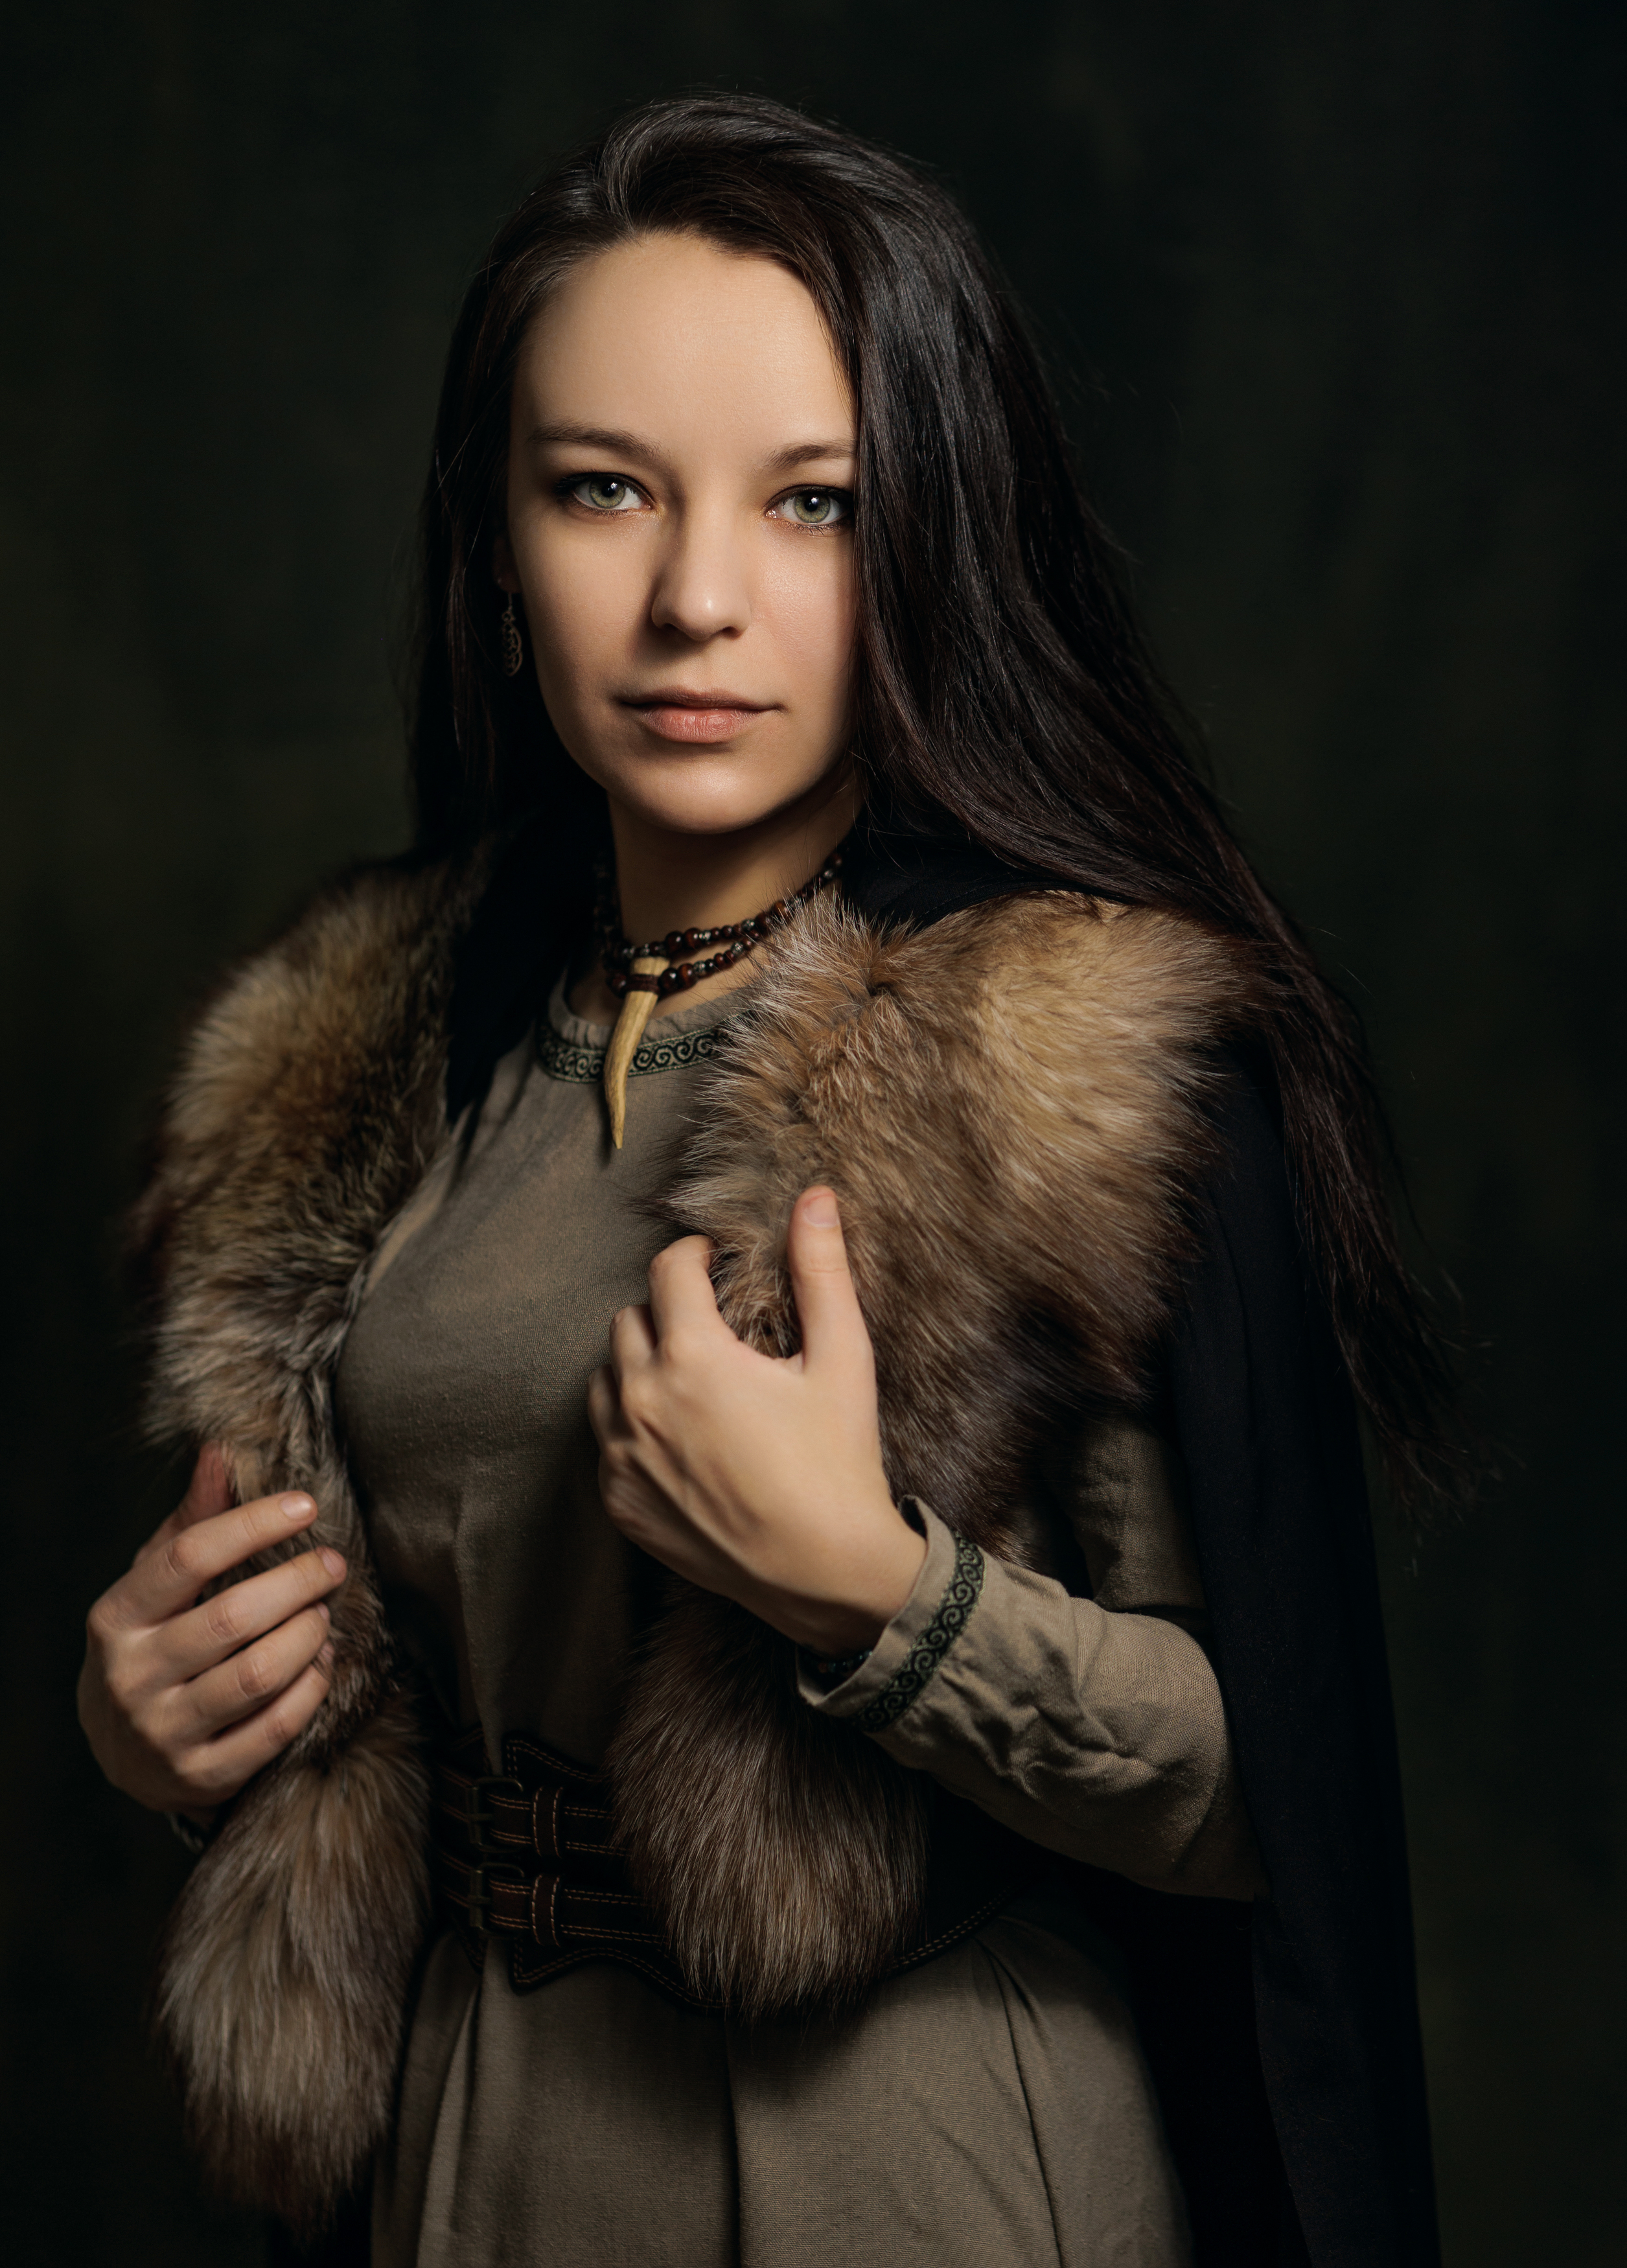 портрет, женский портрет, викинг, девушка, portrait, canon, Екатерина Сигат